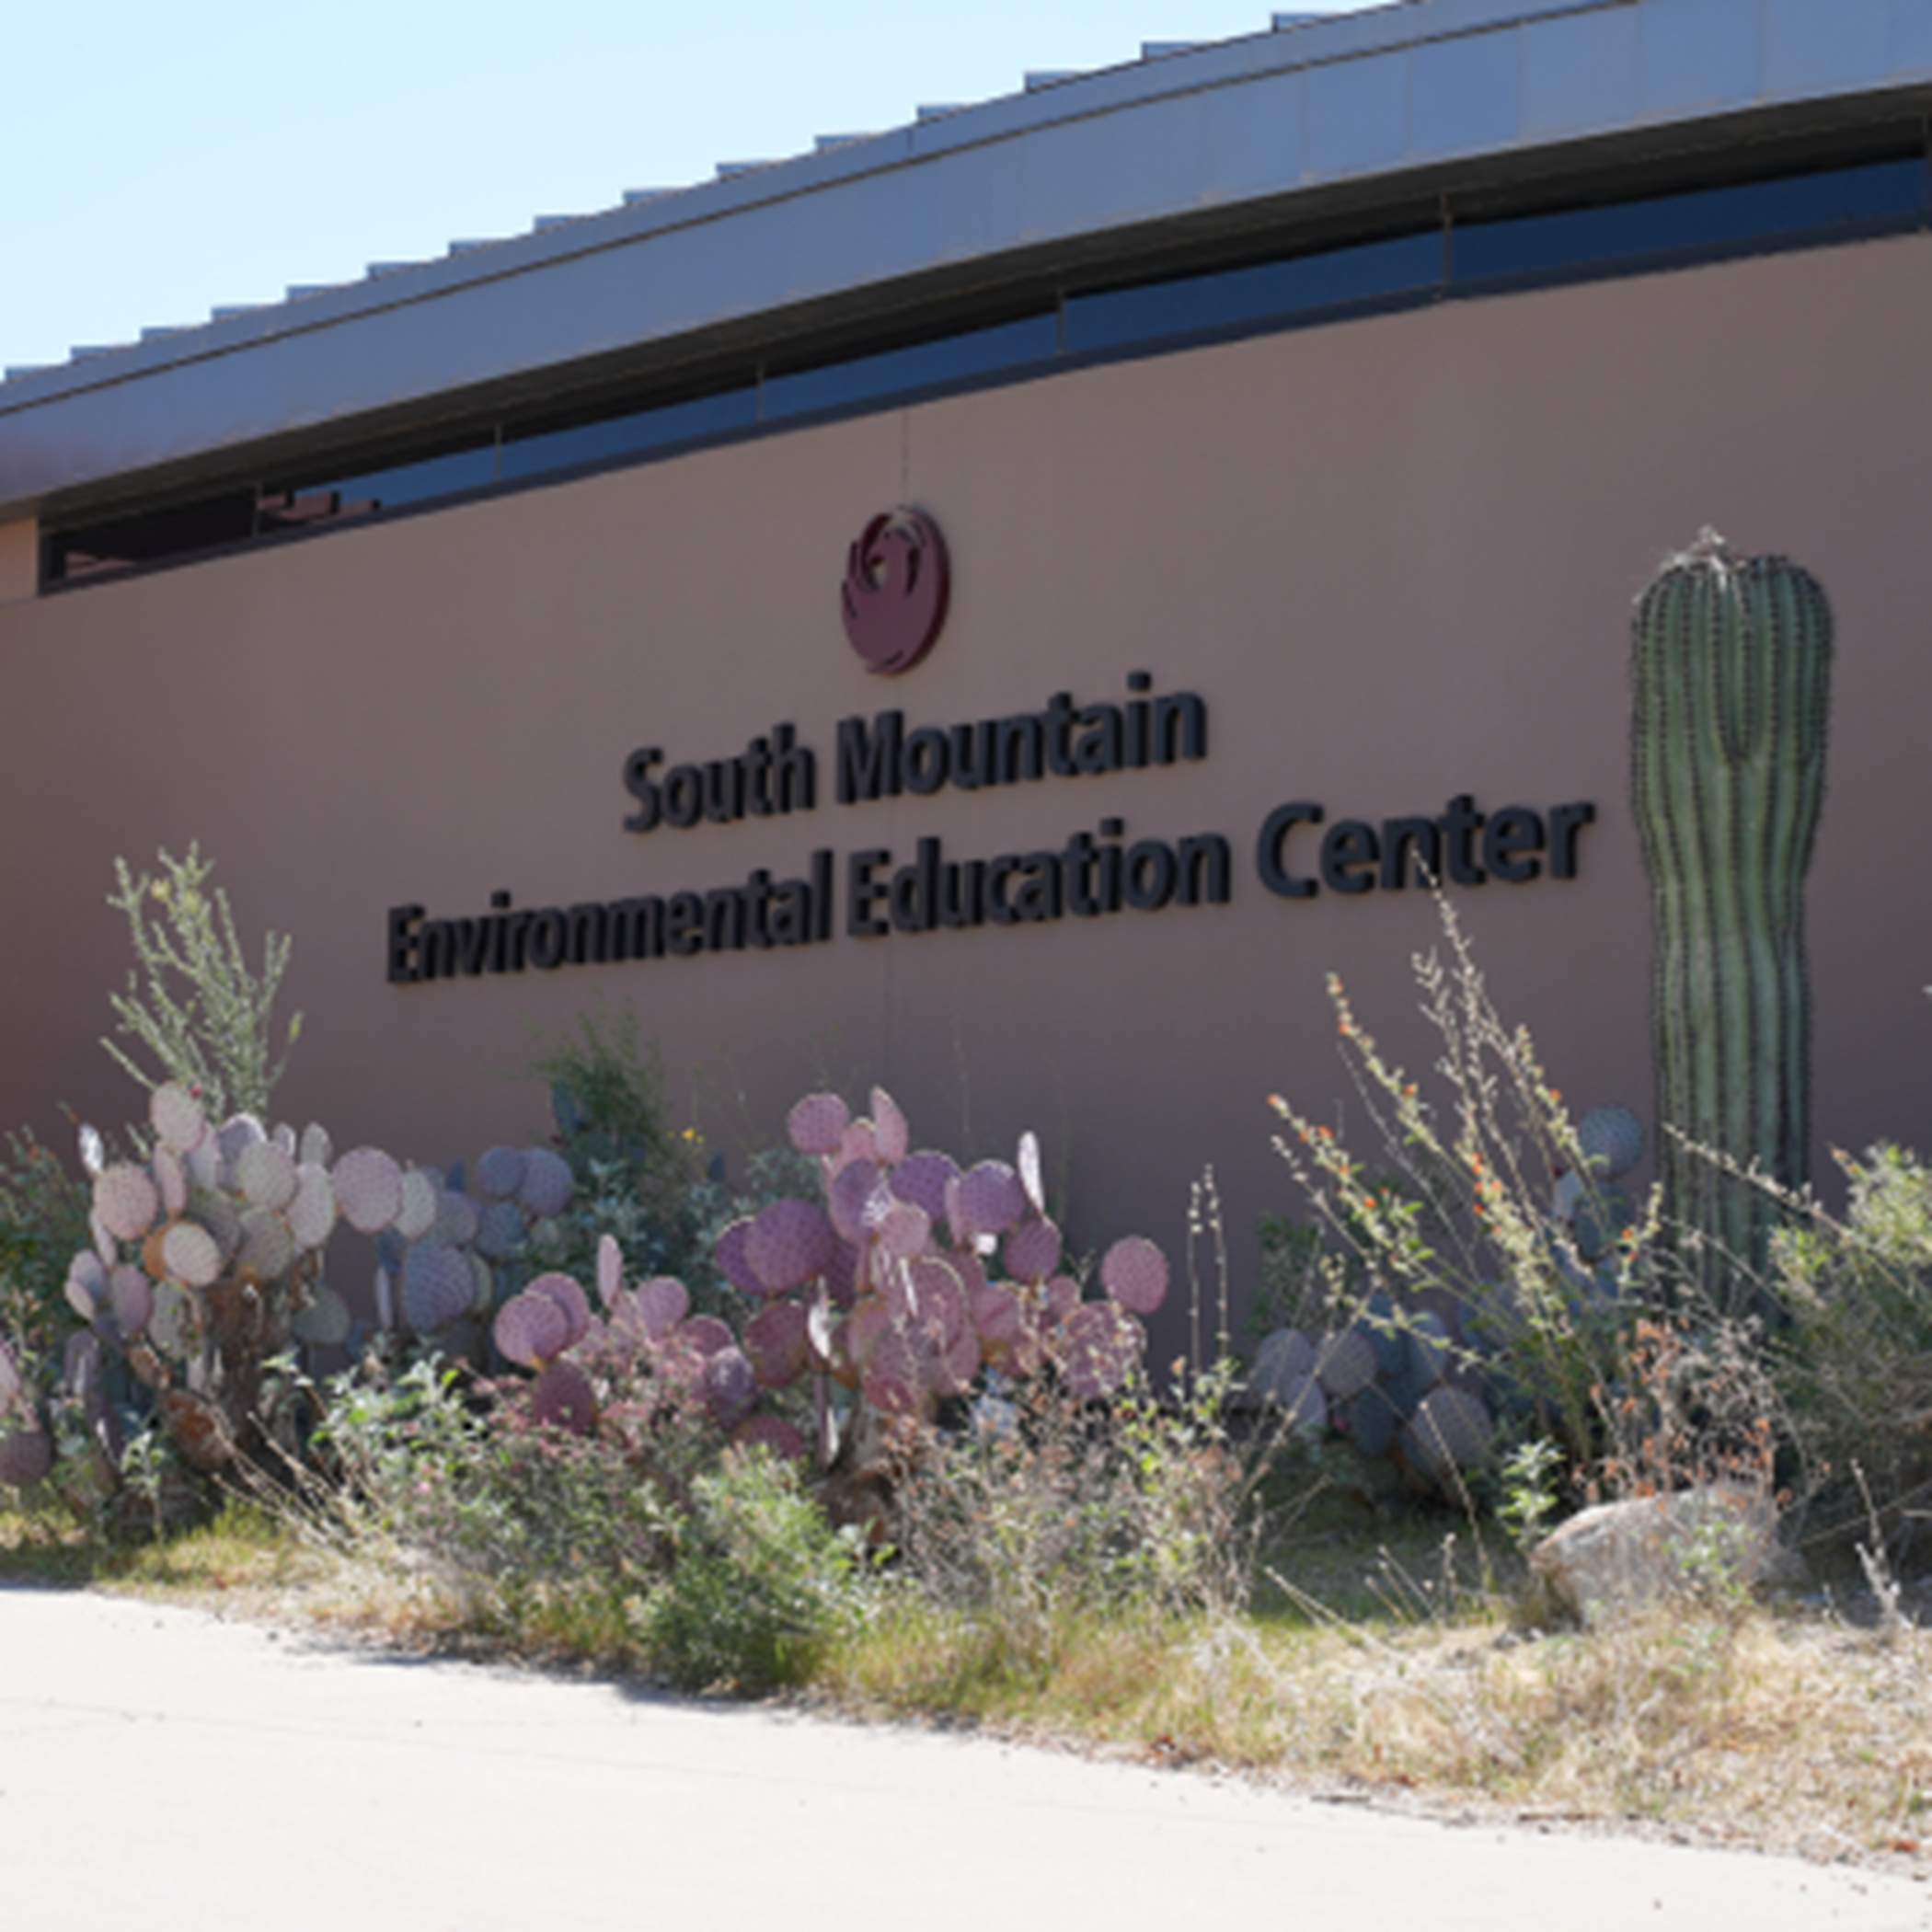 South Mountain Environmental Education Center sign